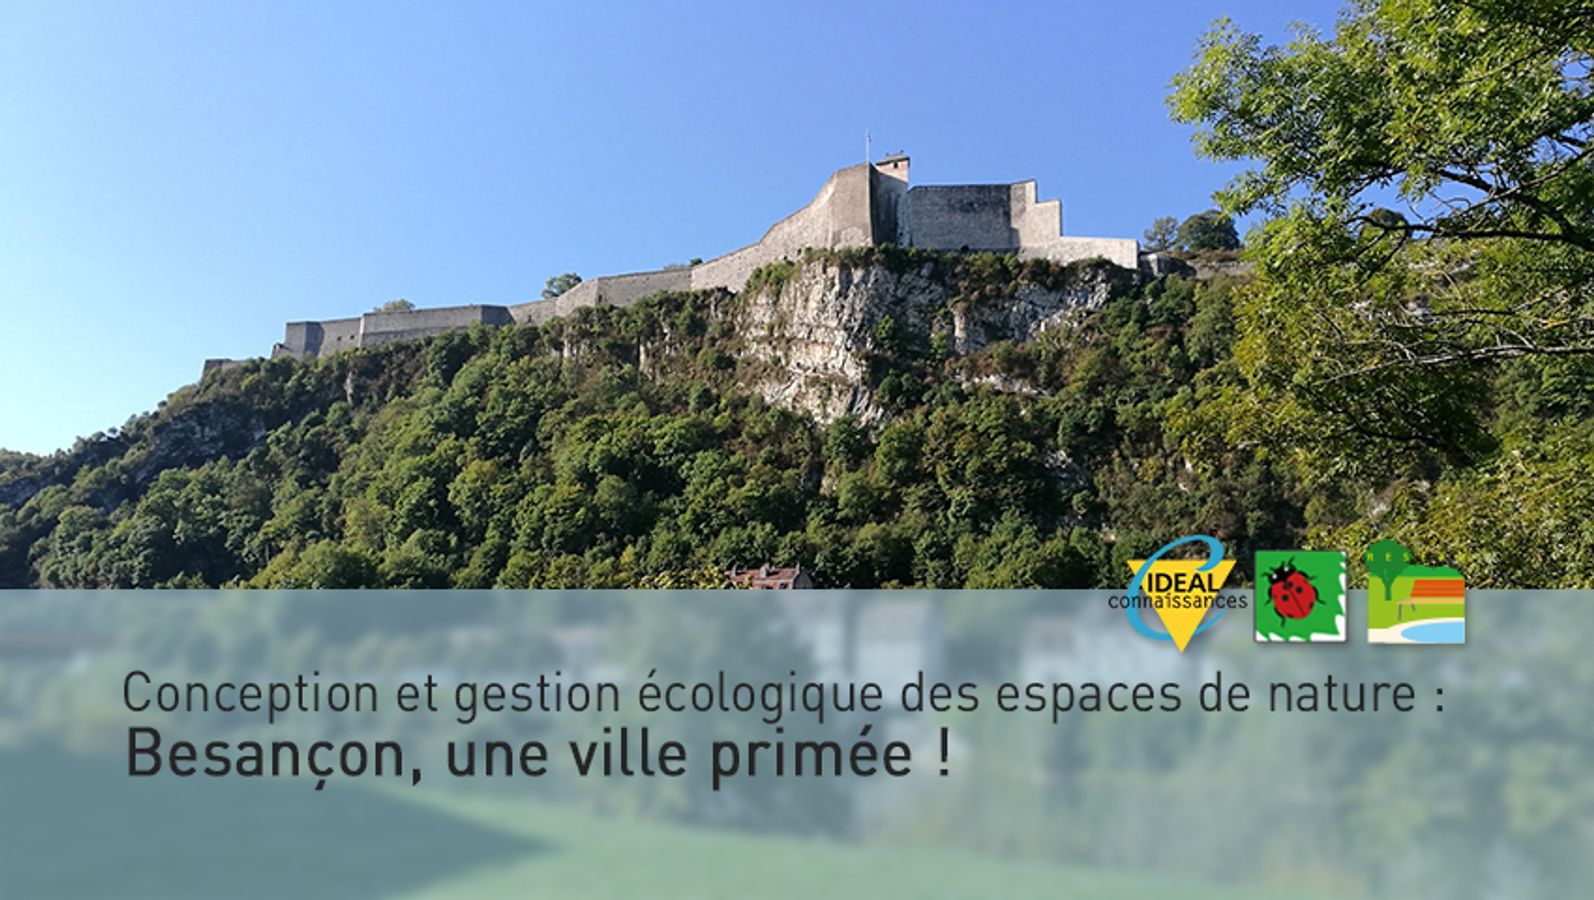 Conception et gestion écologique des espaces de nature : Besançon, une ville primée